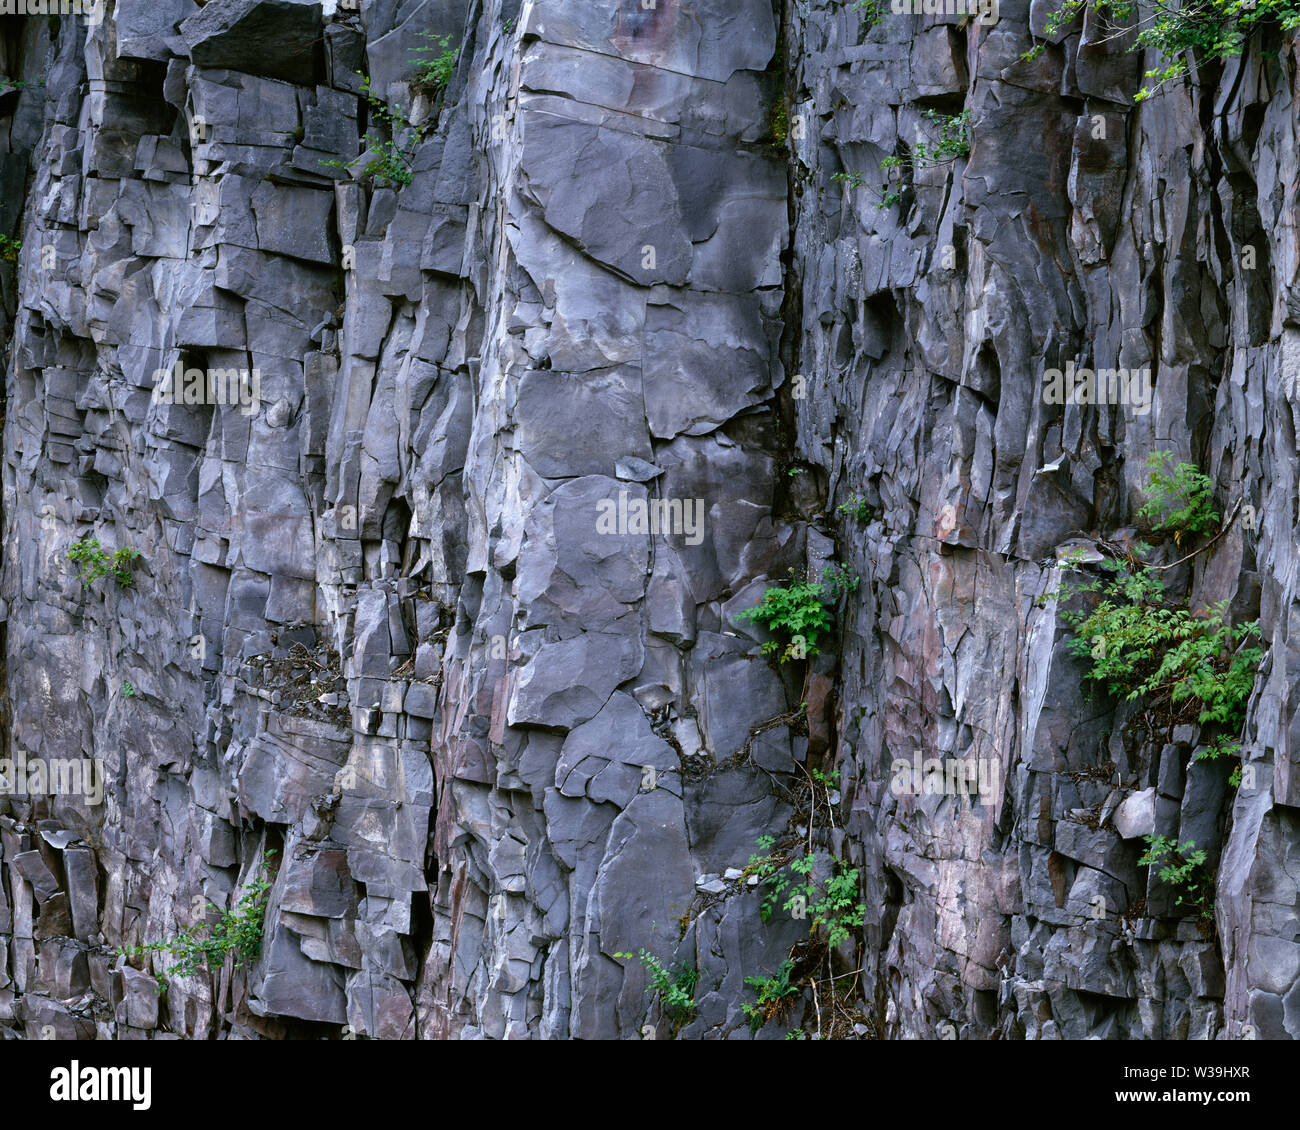 USA, Washington, Mt. Rainier National Park, plantes dispersées dans les roches fracturées, gain de mur dans la région de Stevens Canyon. Banque D'Images